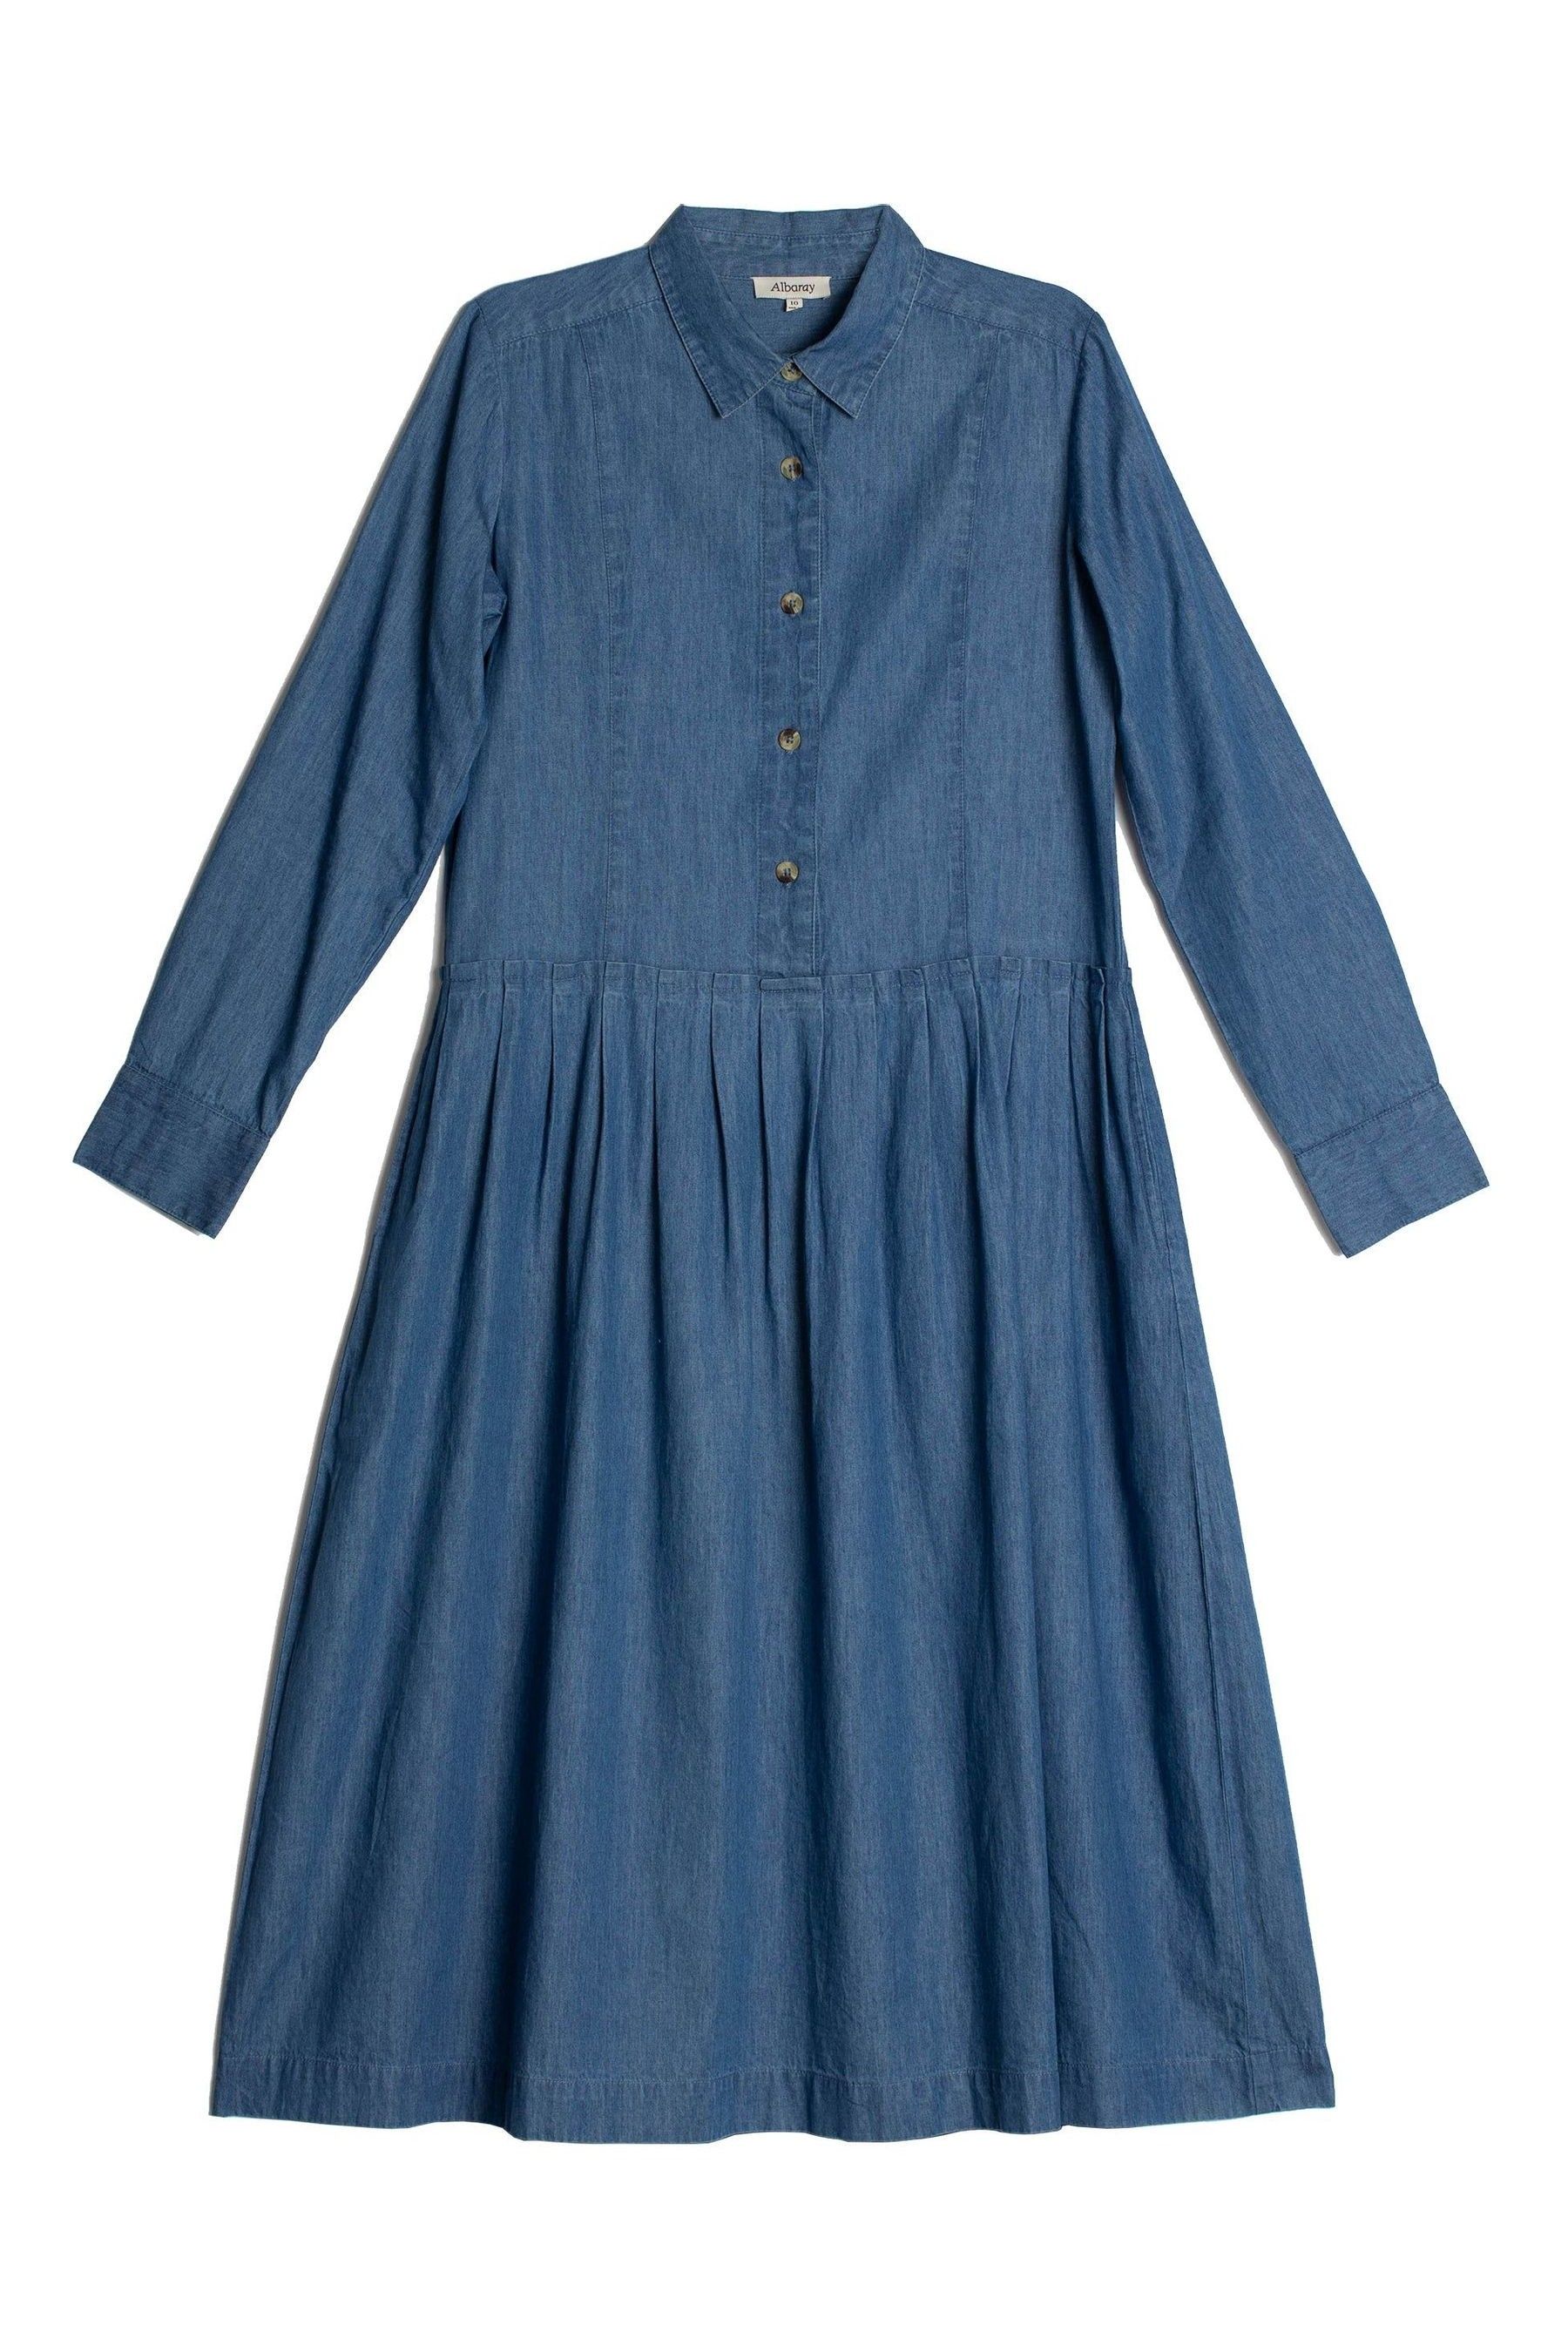 Buy Albaray Blue Denim Drop Waist Shirt Dress from Next Ireland